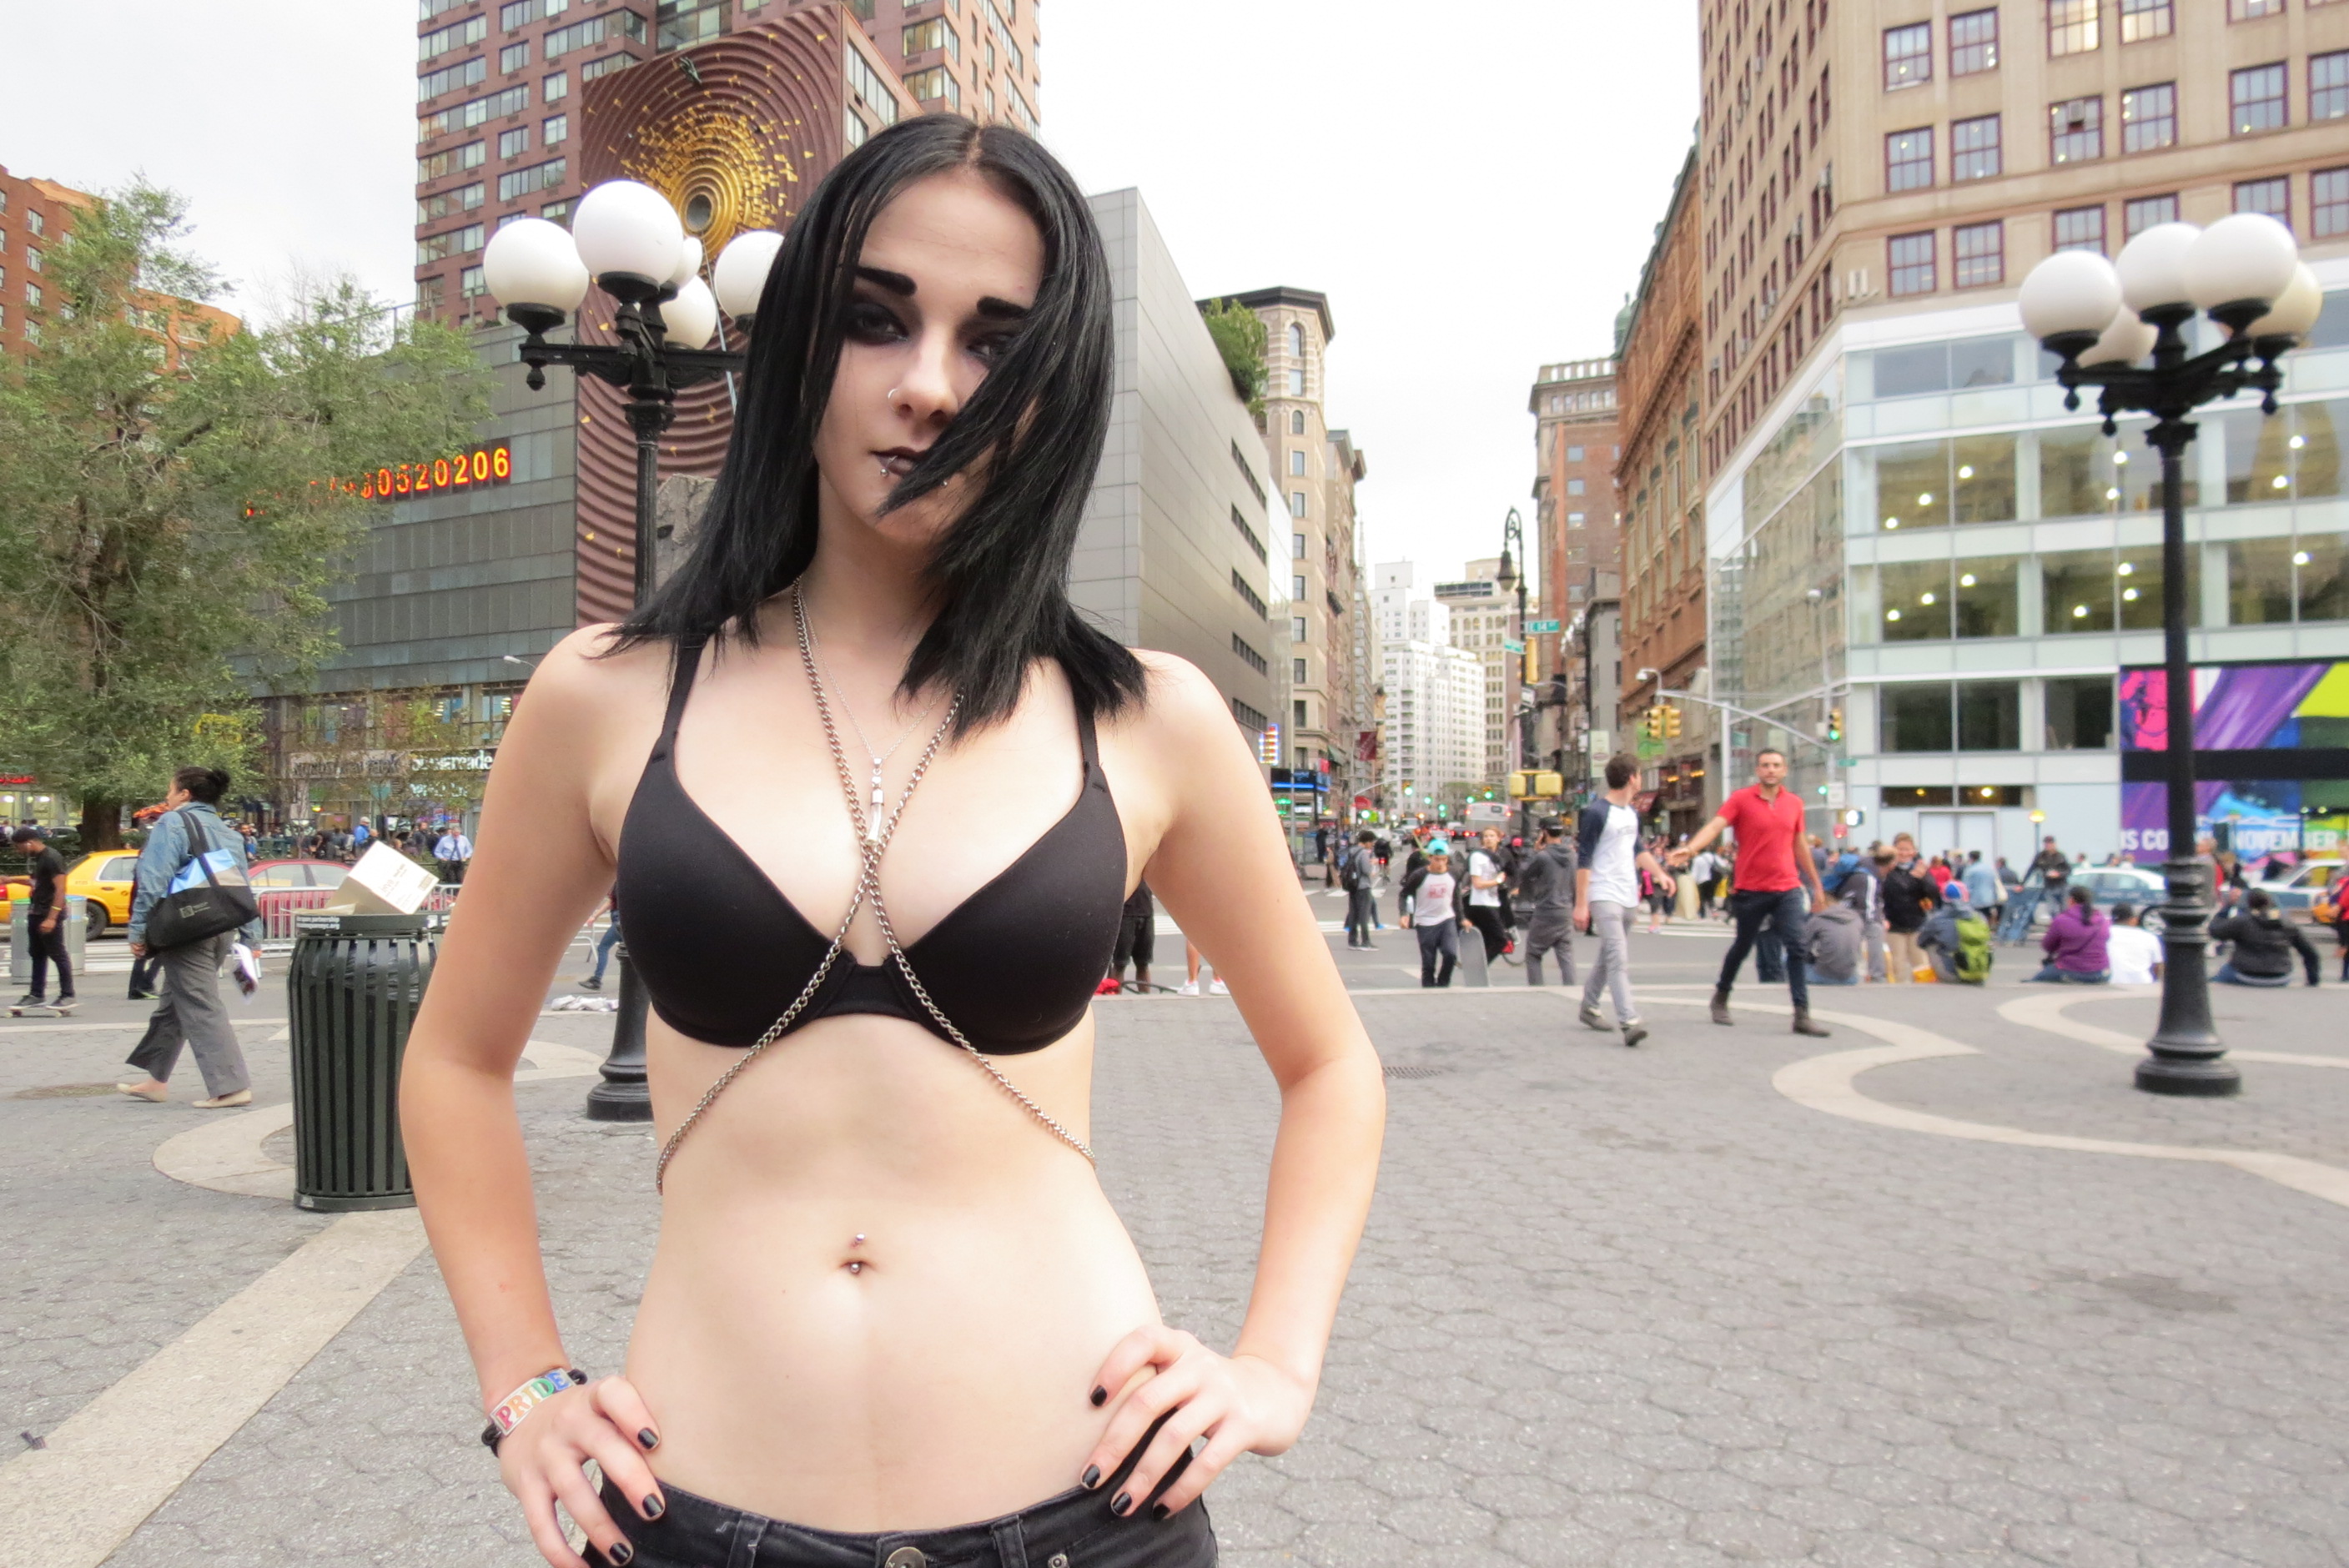 Hot goth girl in bra & chain